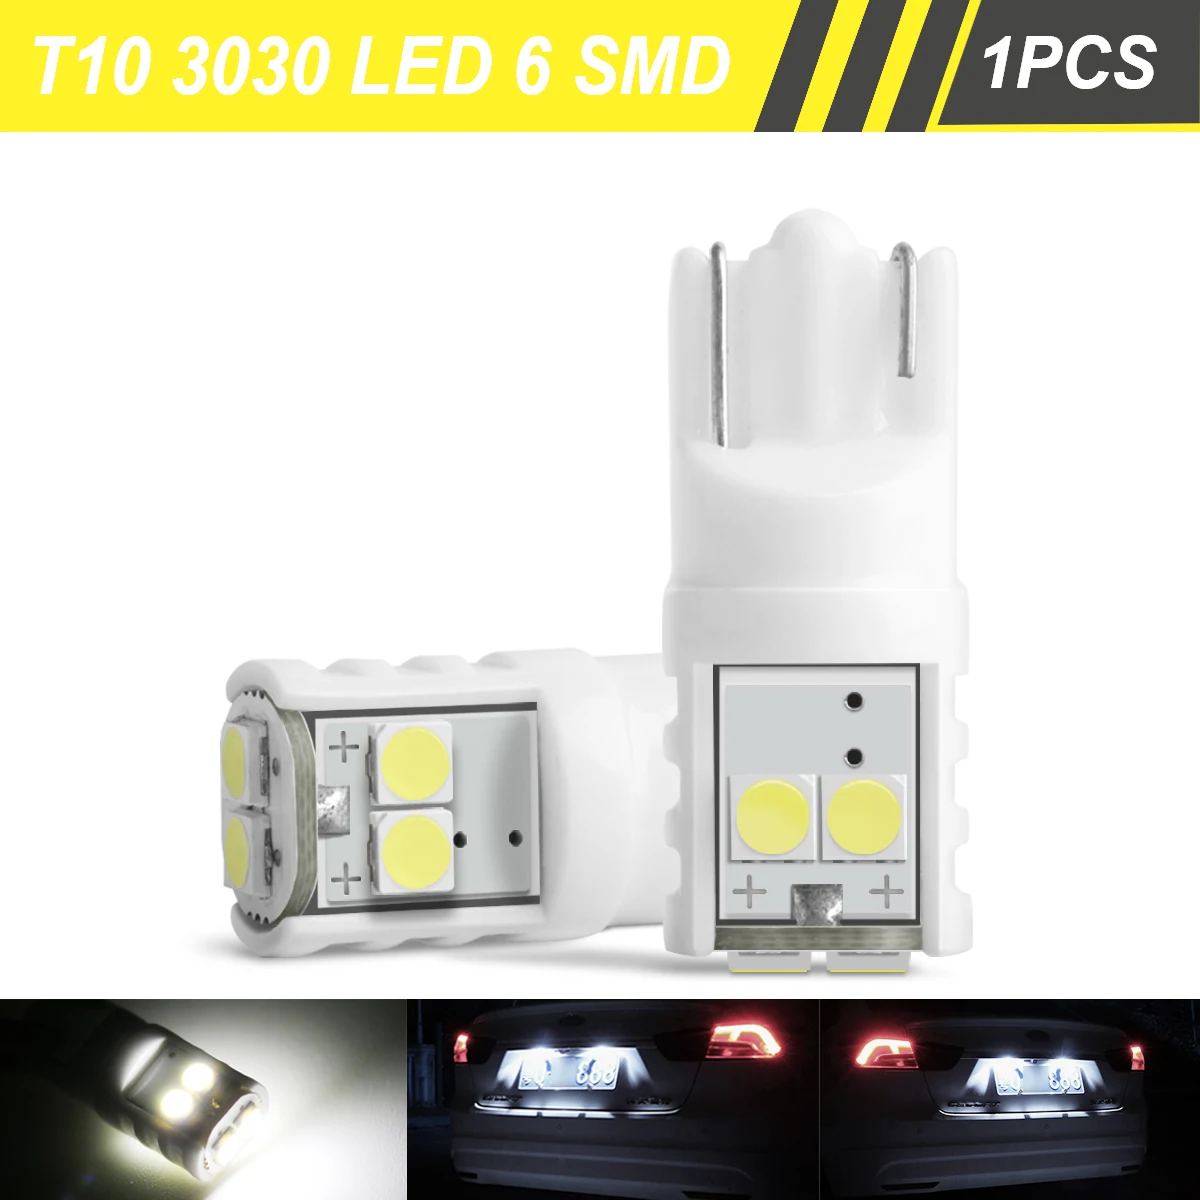 

Светодиодная лампа T10 W5W 194 3030 6 SMD, аксессуары для автомобильного интерьера, подсветка номерного знака, купольная лампа для чтения, парковочный светильник, 12 В, 1 шт.